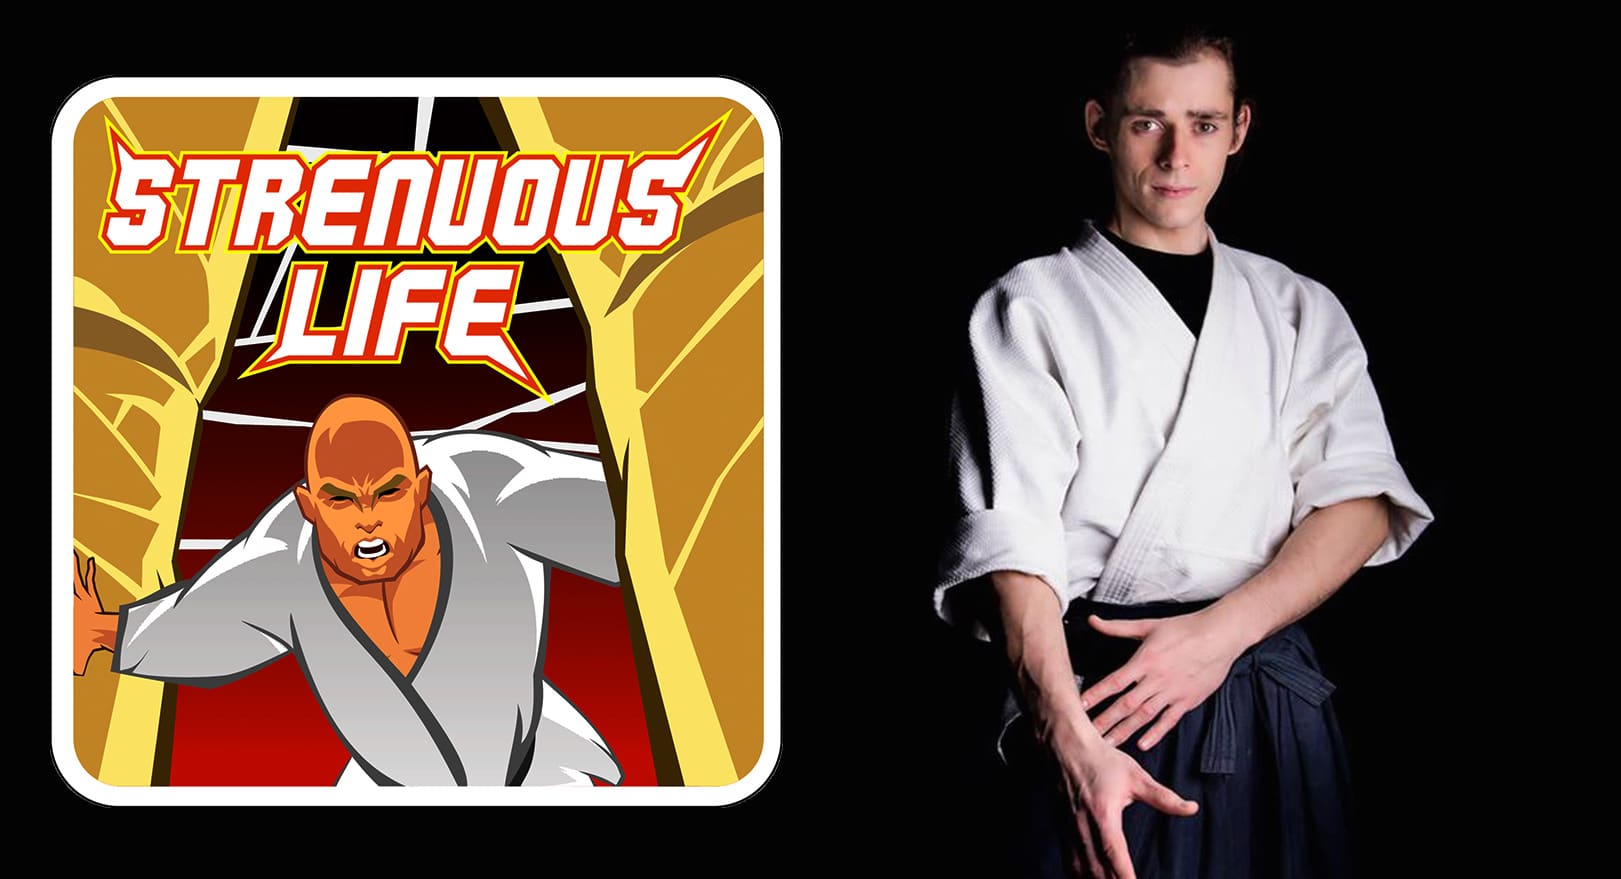 Aikido vs MMA